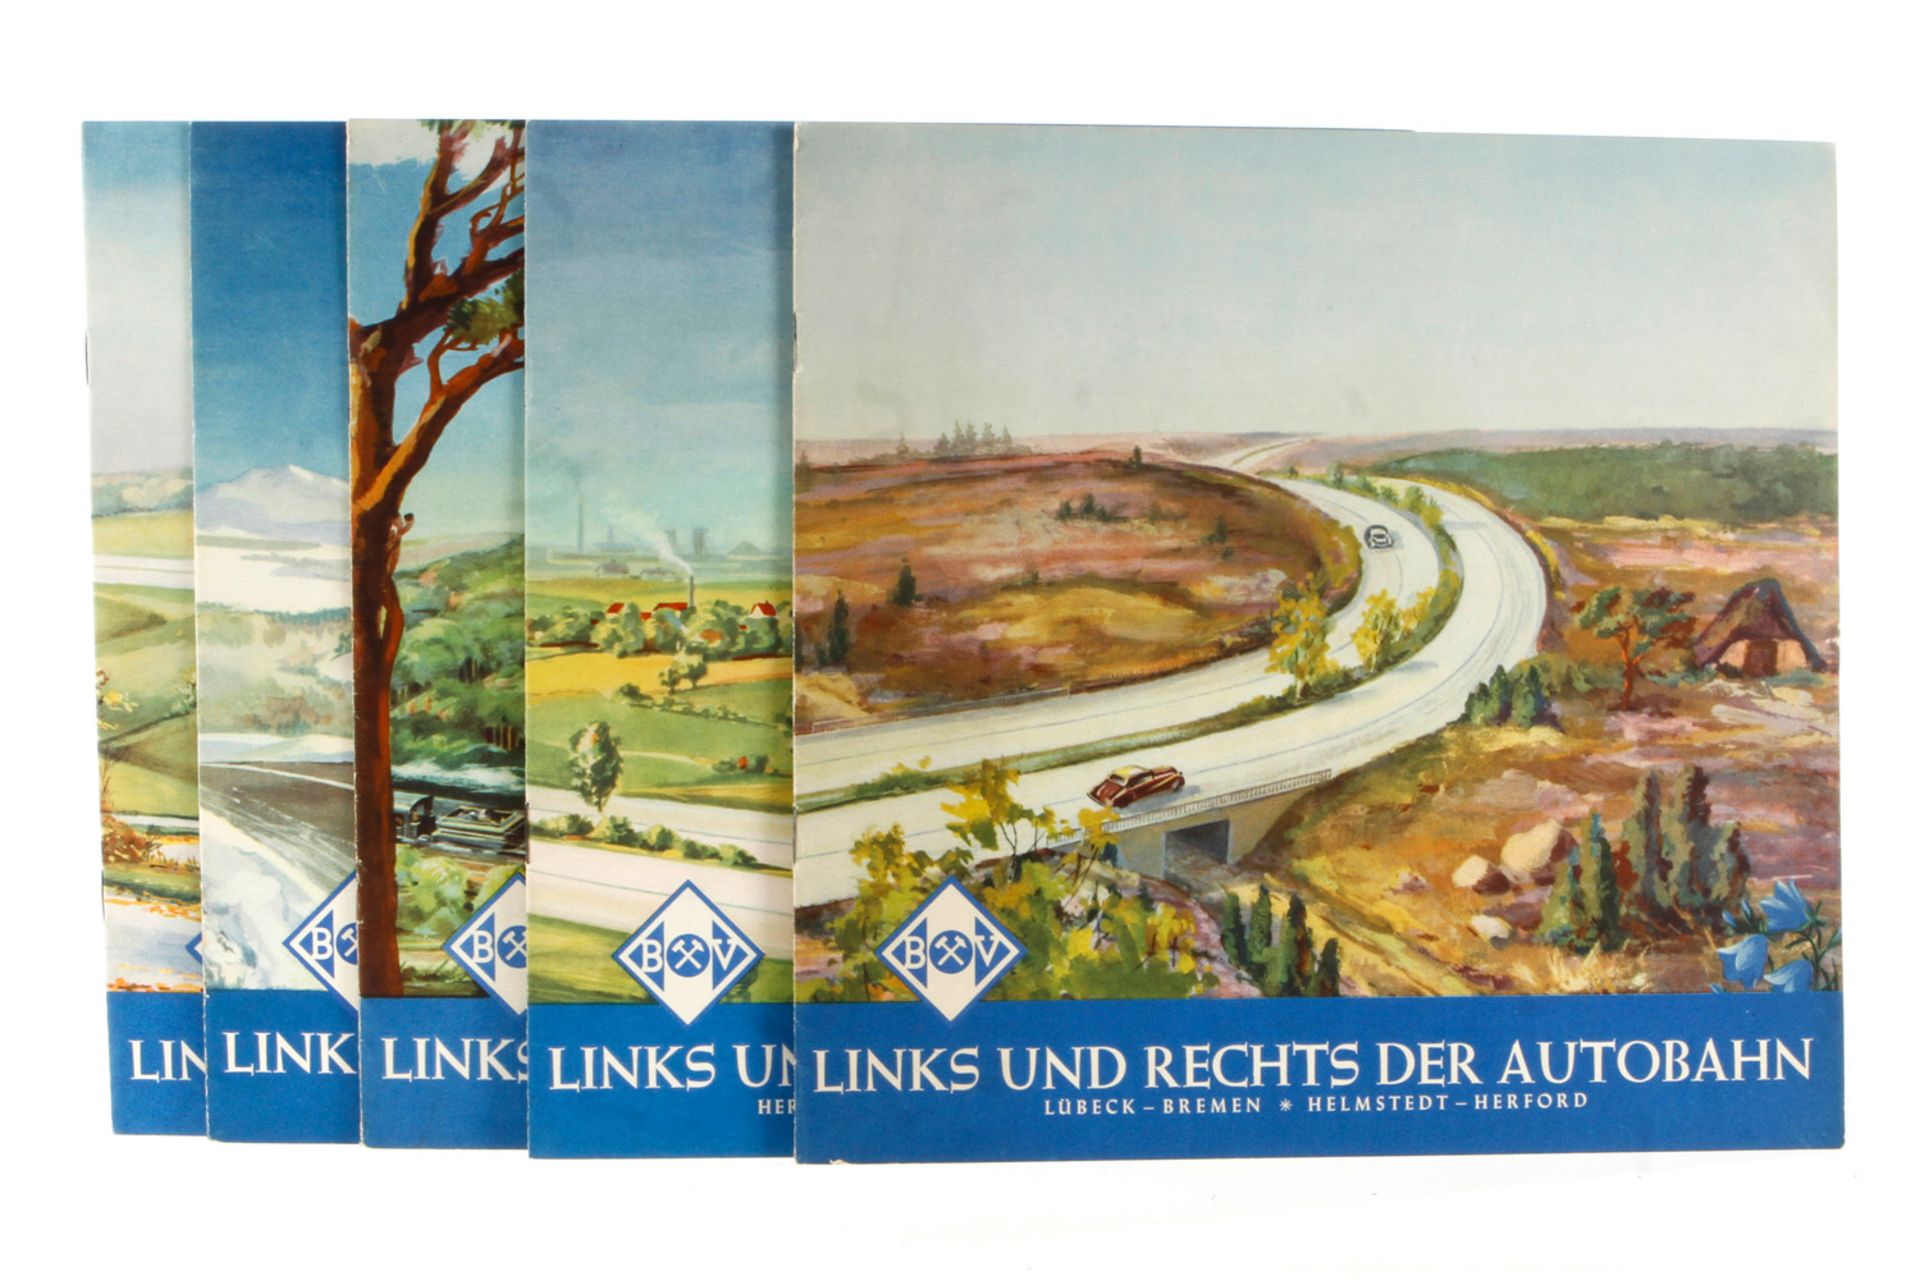 BV-Aral Bildband "links und rechts der Autobahn", 5 Hefte im Schuber, Verlag Witzel, Essen, 1950/51,